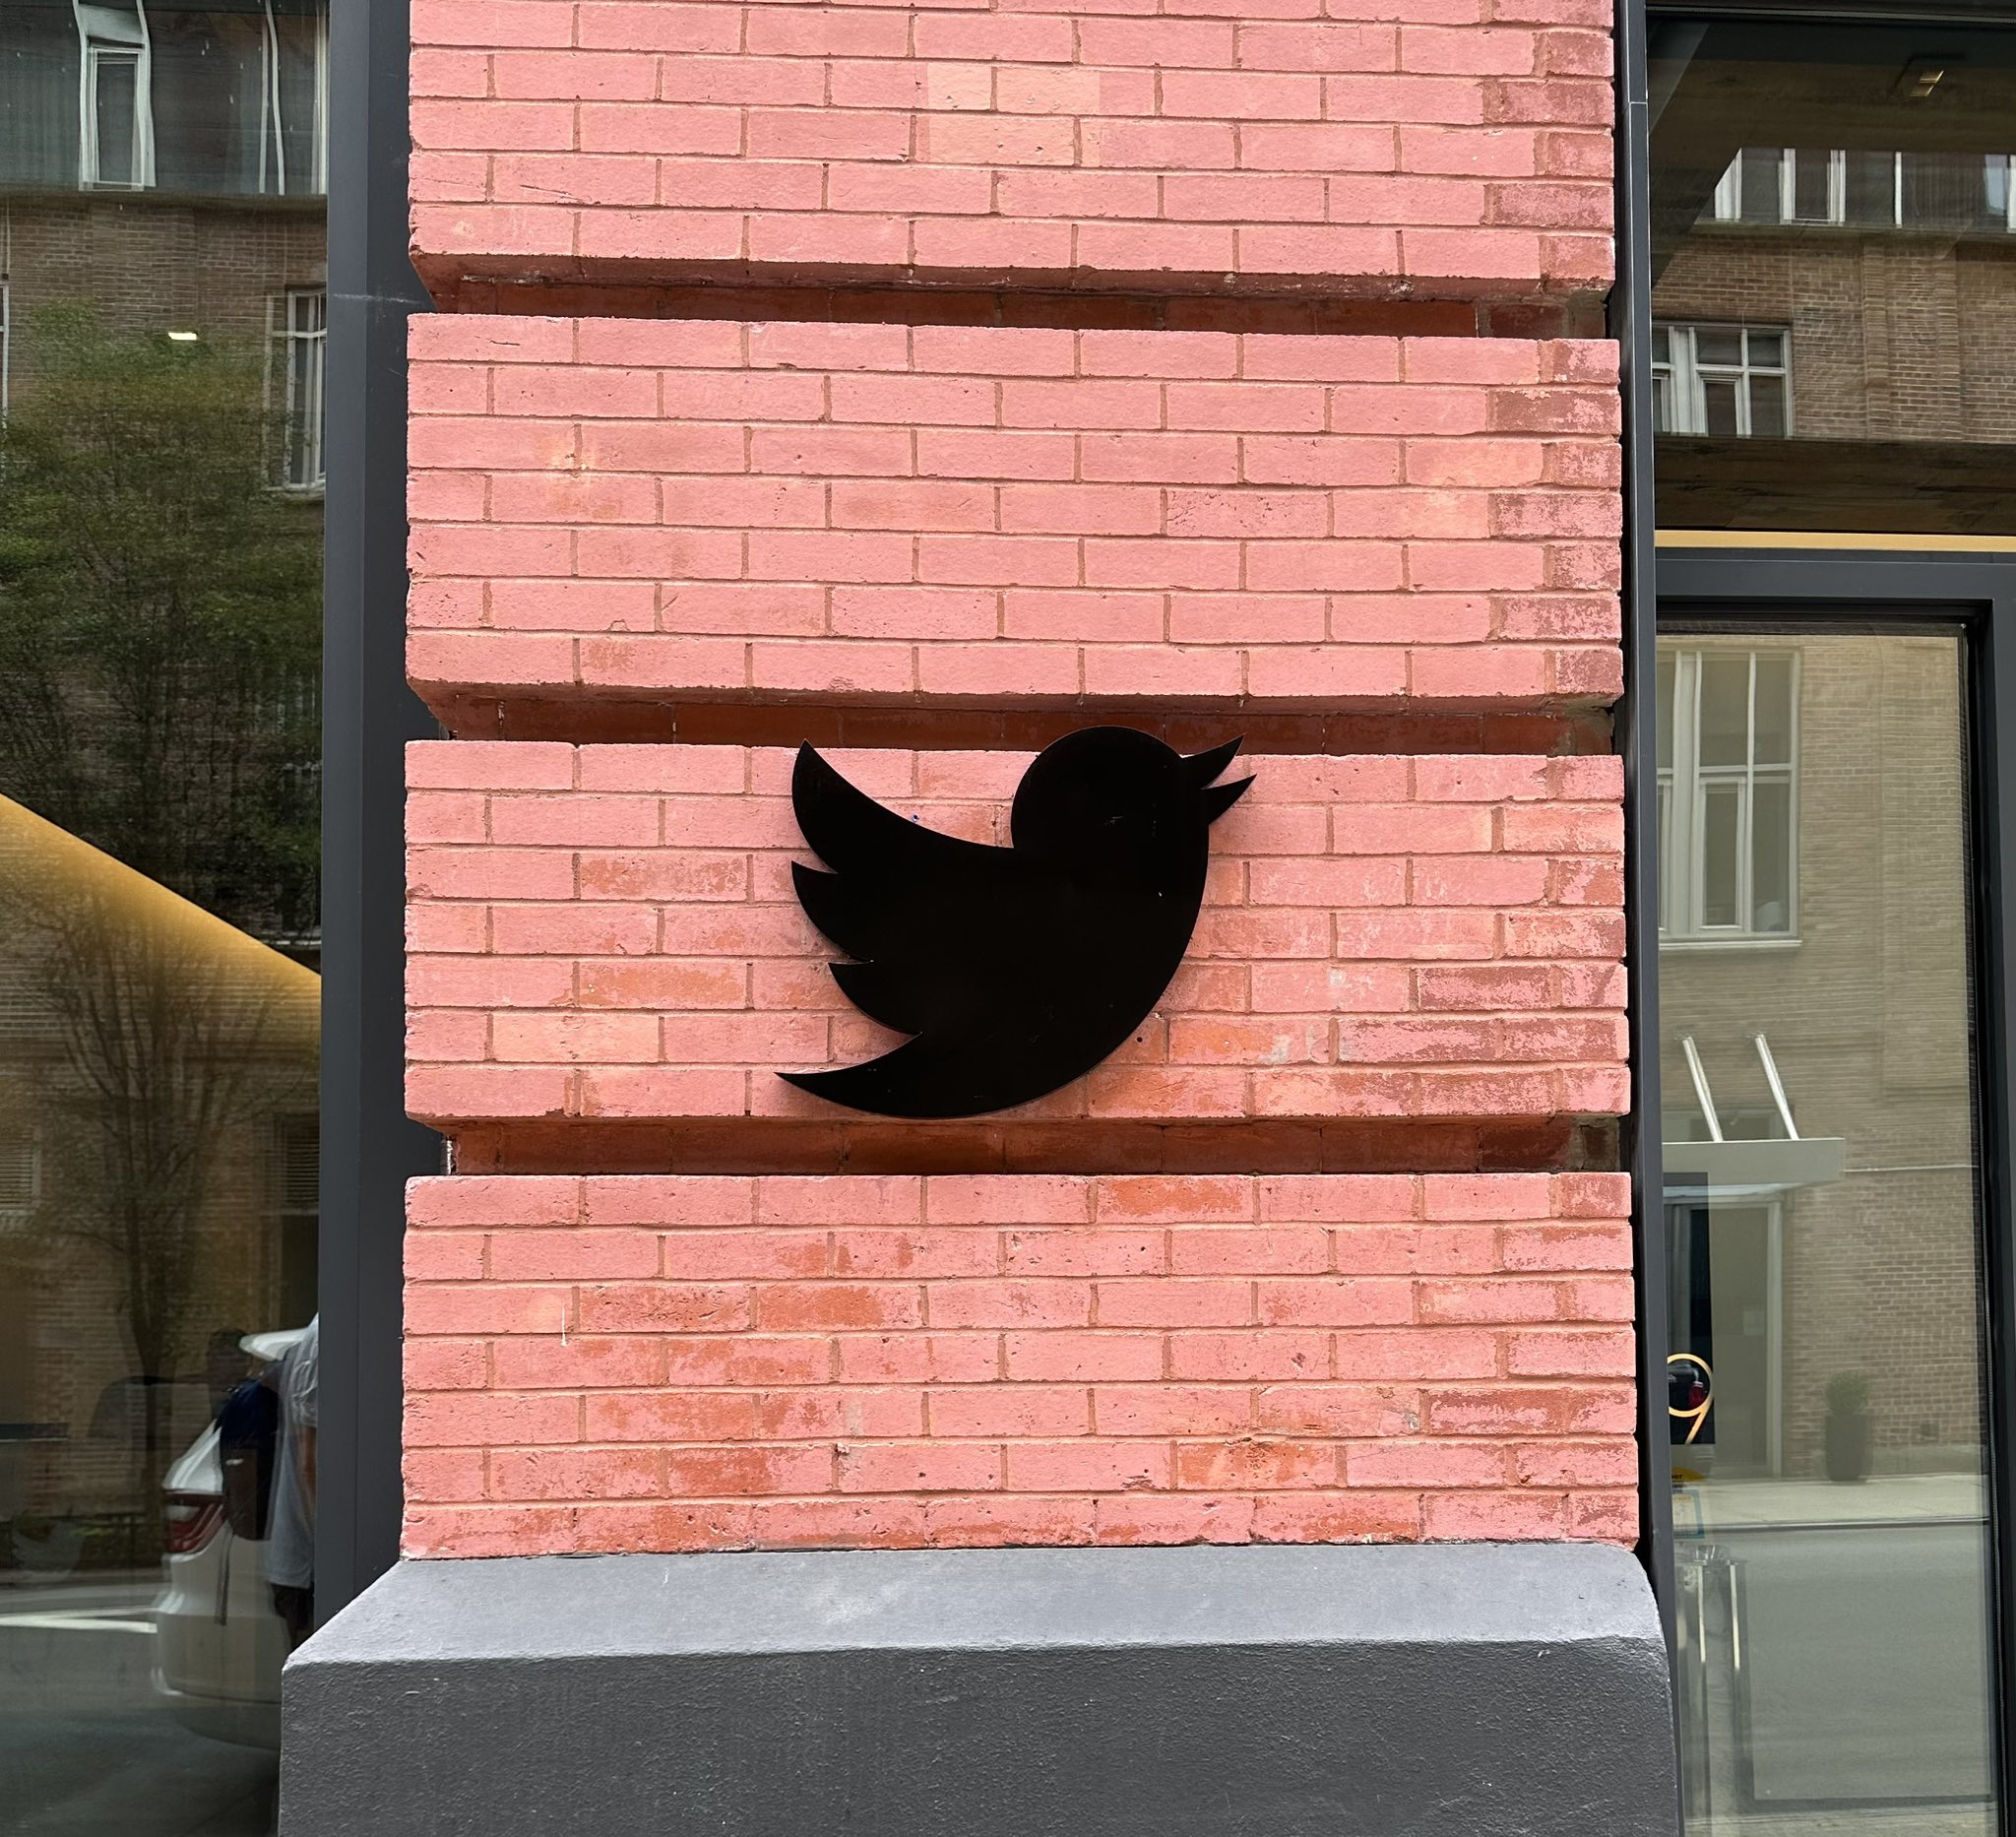 El nuevo jefe de Twitter se enfrenta a desafíos en su rol ejecutivo